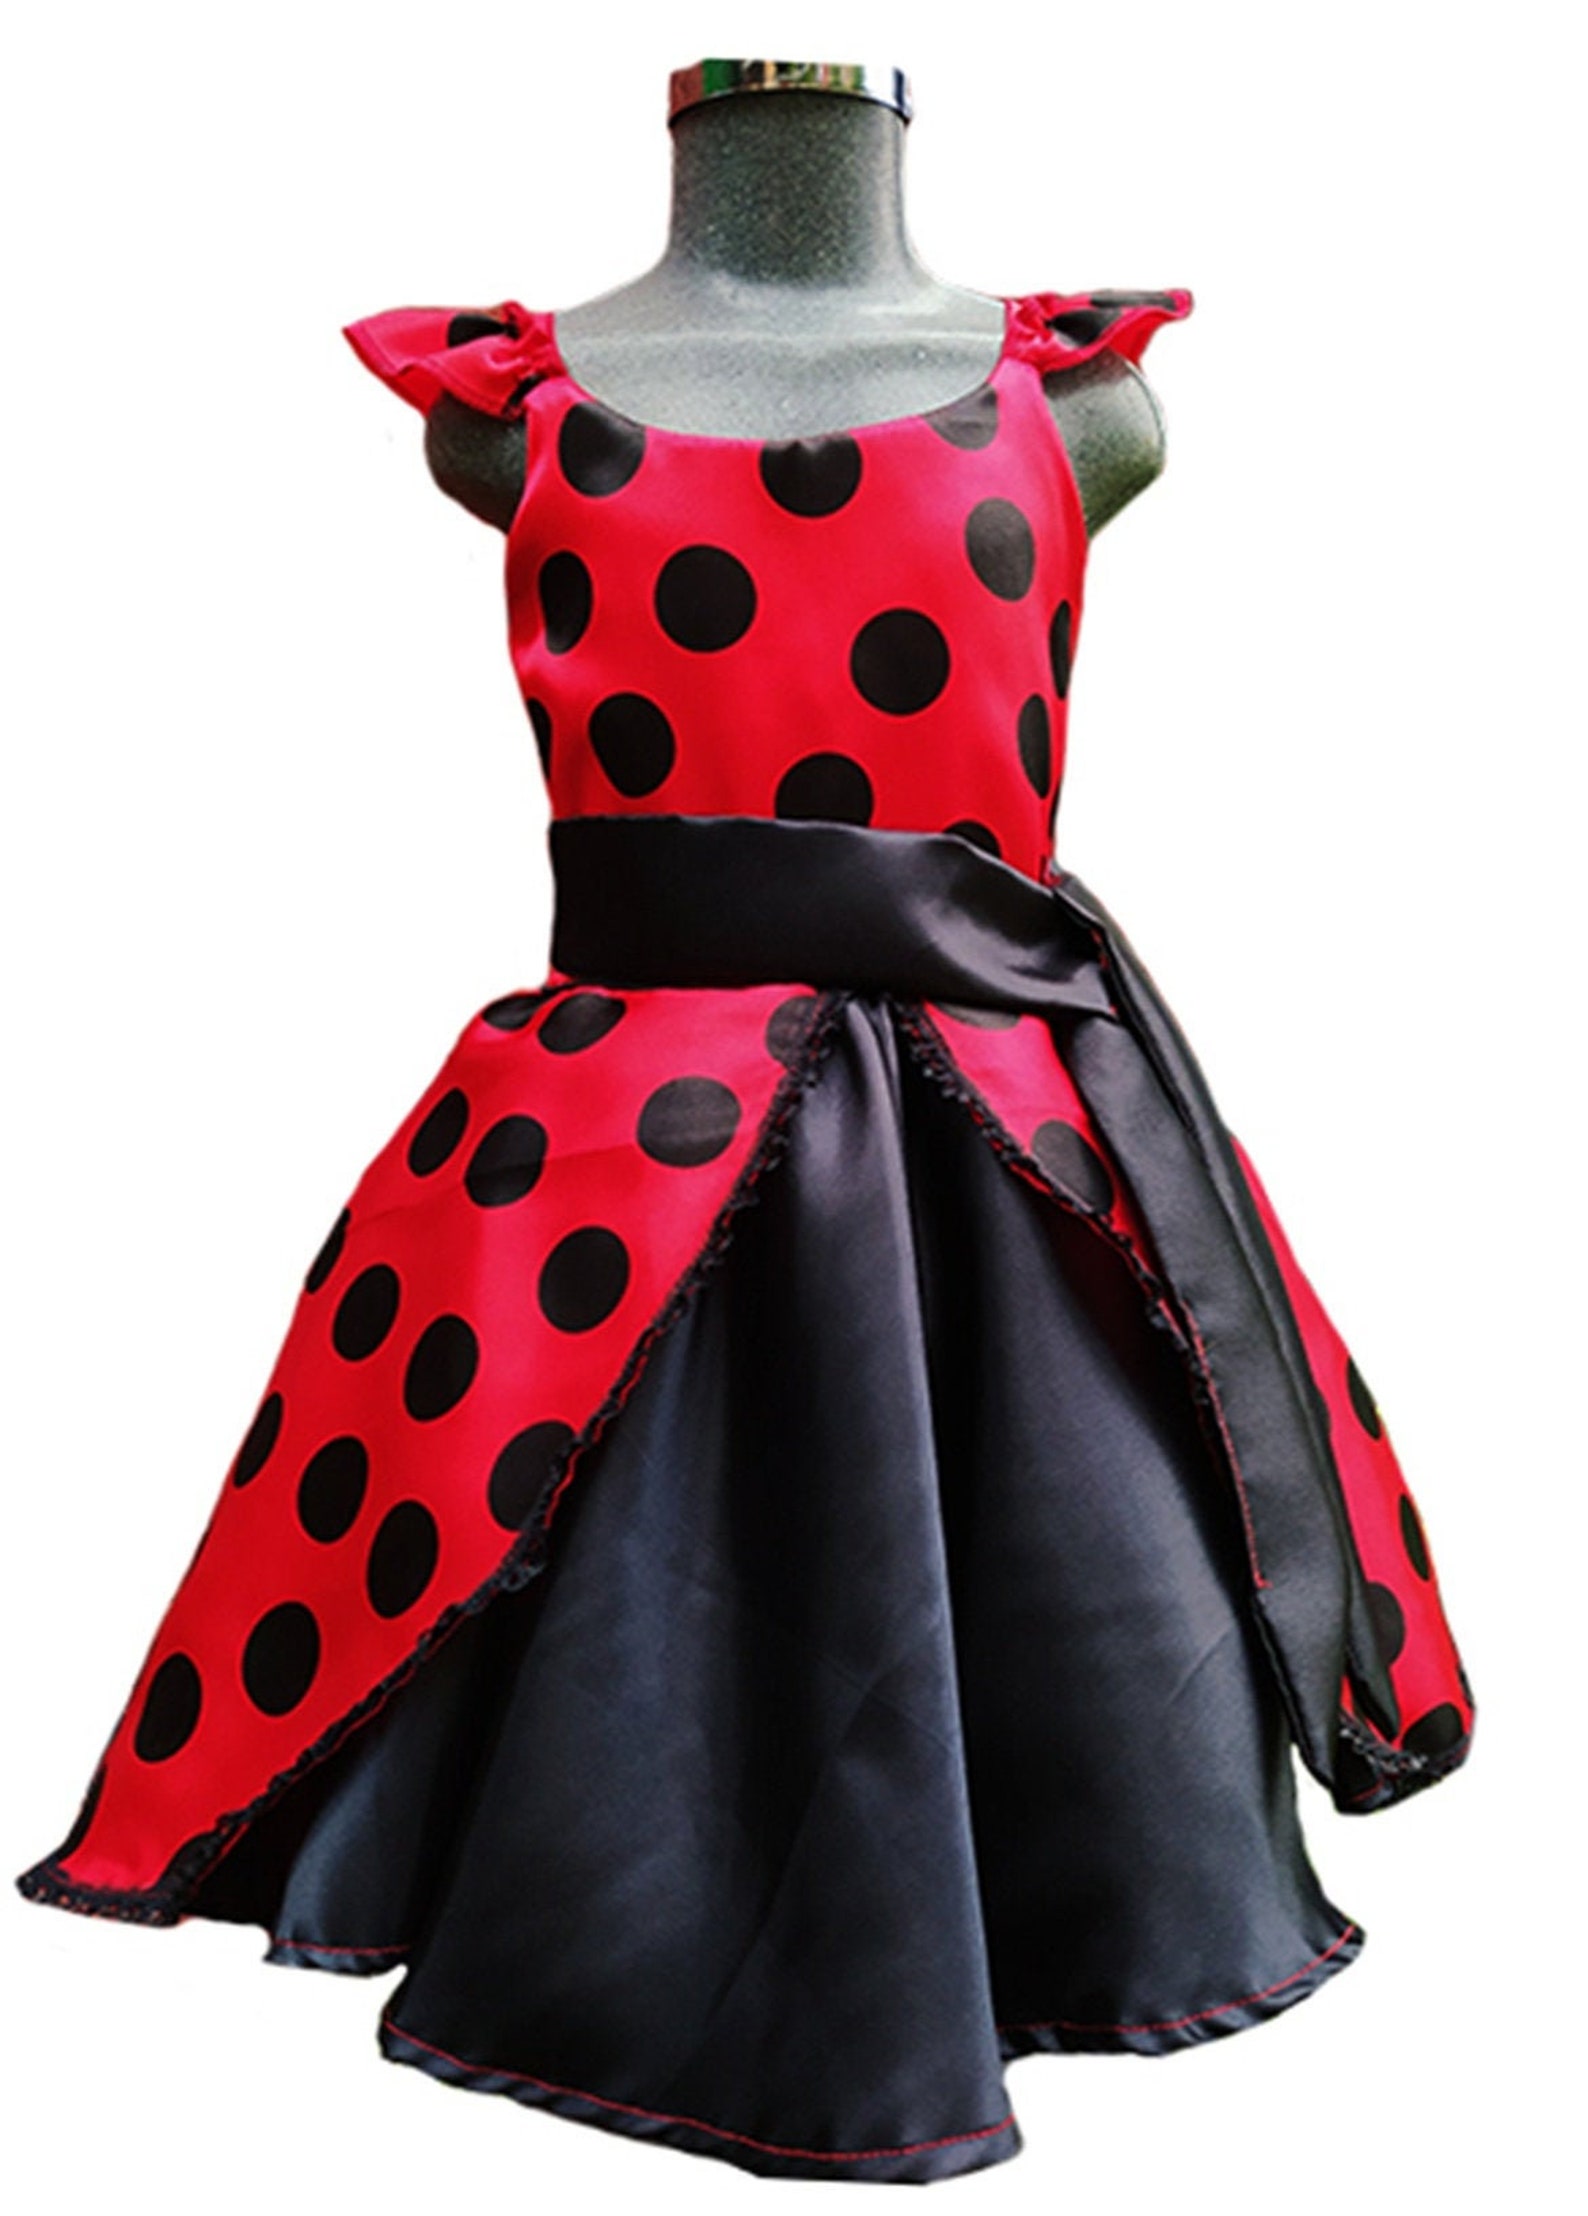 Ladybug dress / Ladybug outfit/ Ladybug Birthday day dress | Etsy